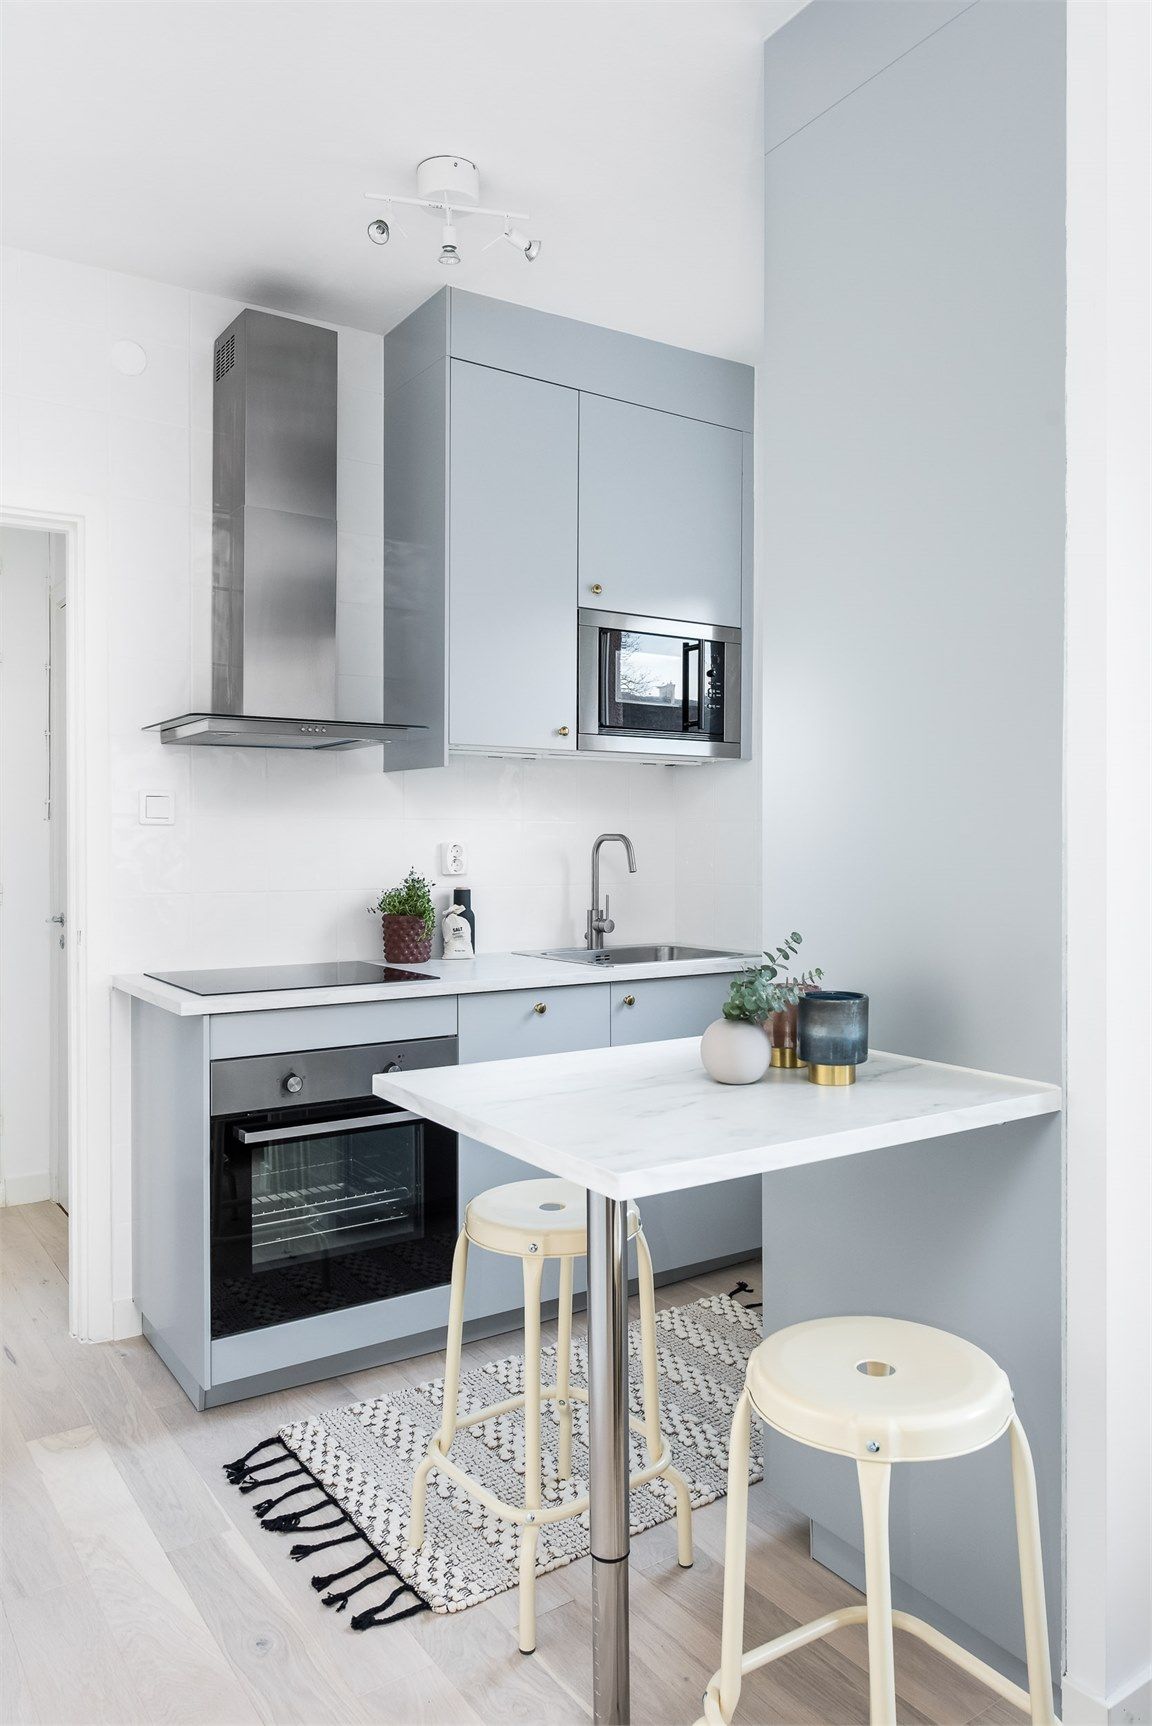 Dapur berbentuk U dapat menjadi opsi solusi saat menata dapur kecil.